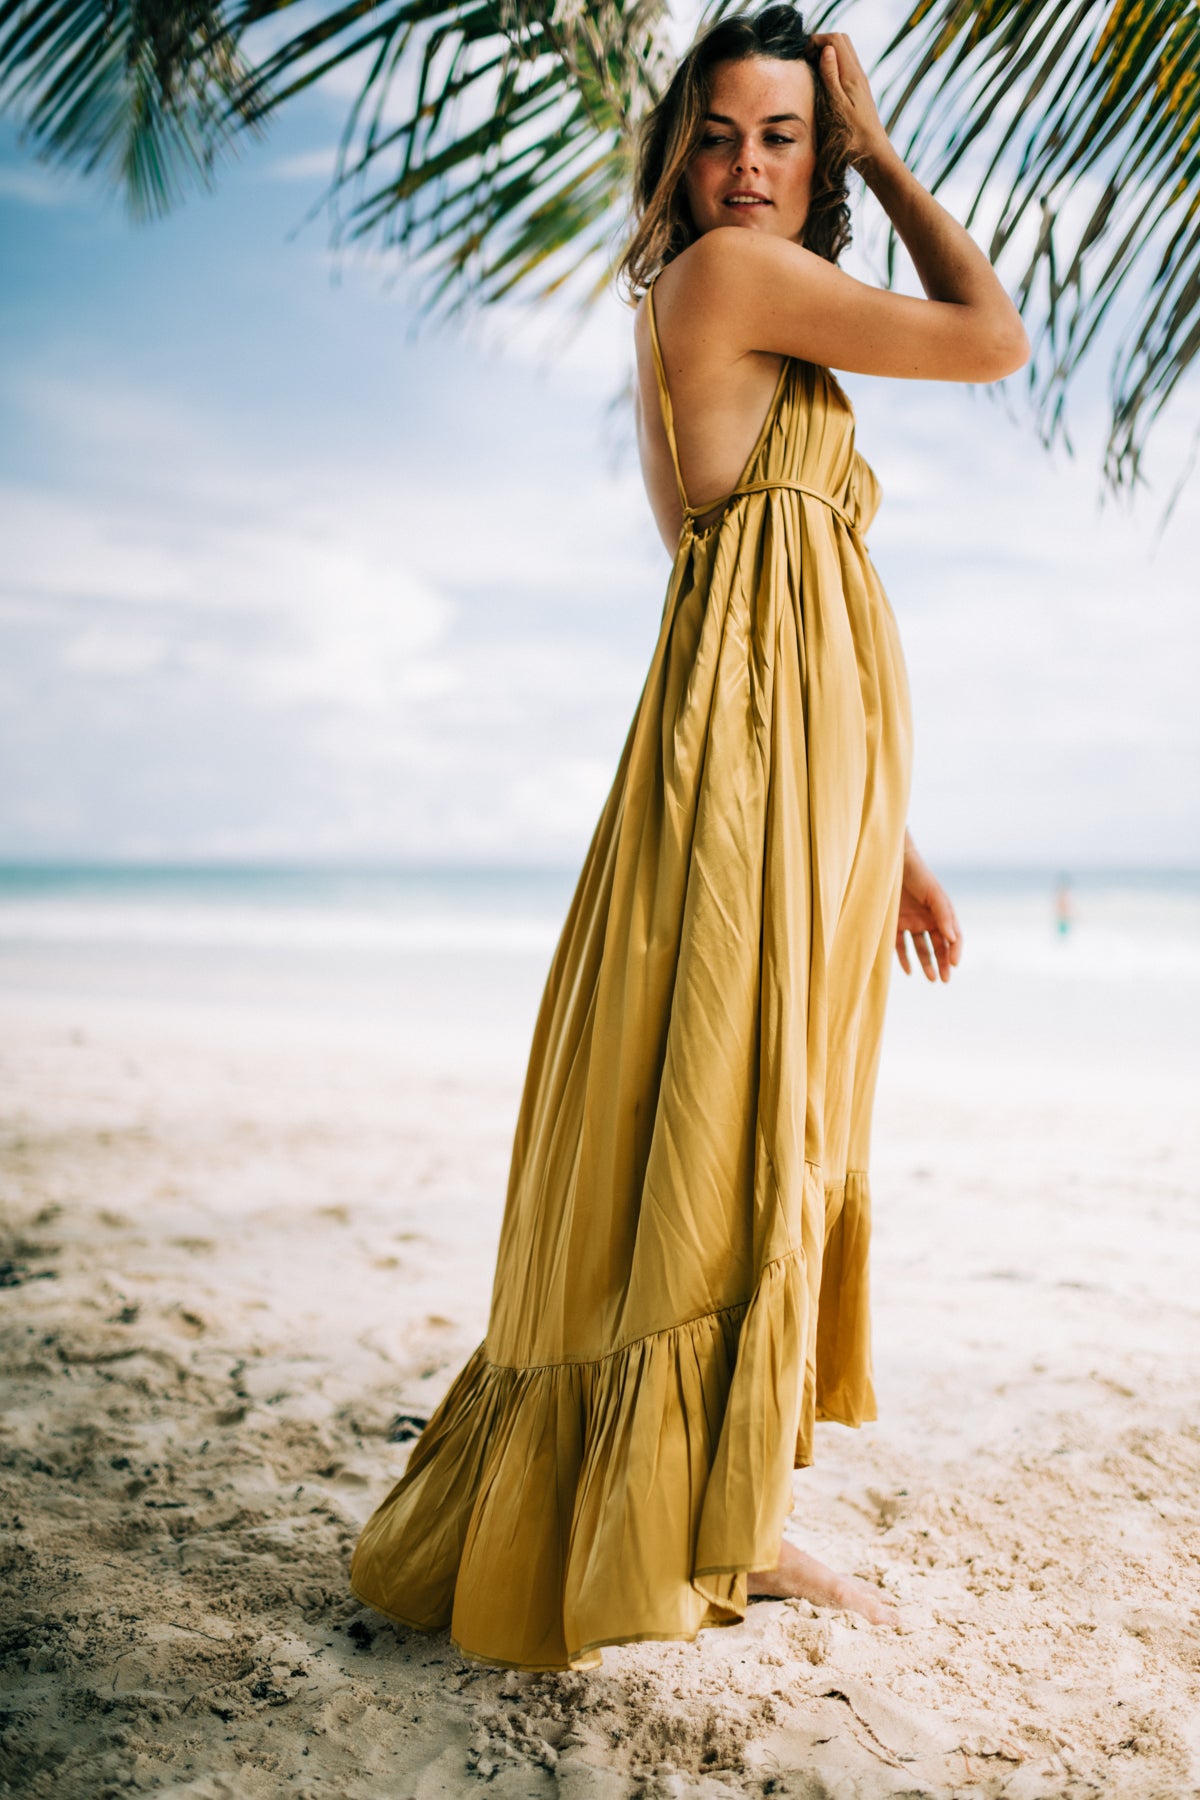 Ruffle Maxi Dress, Long Flowy Dress, Beach Dress